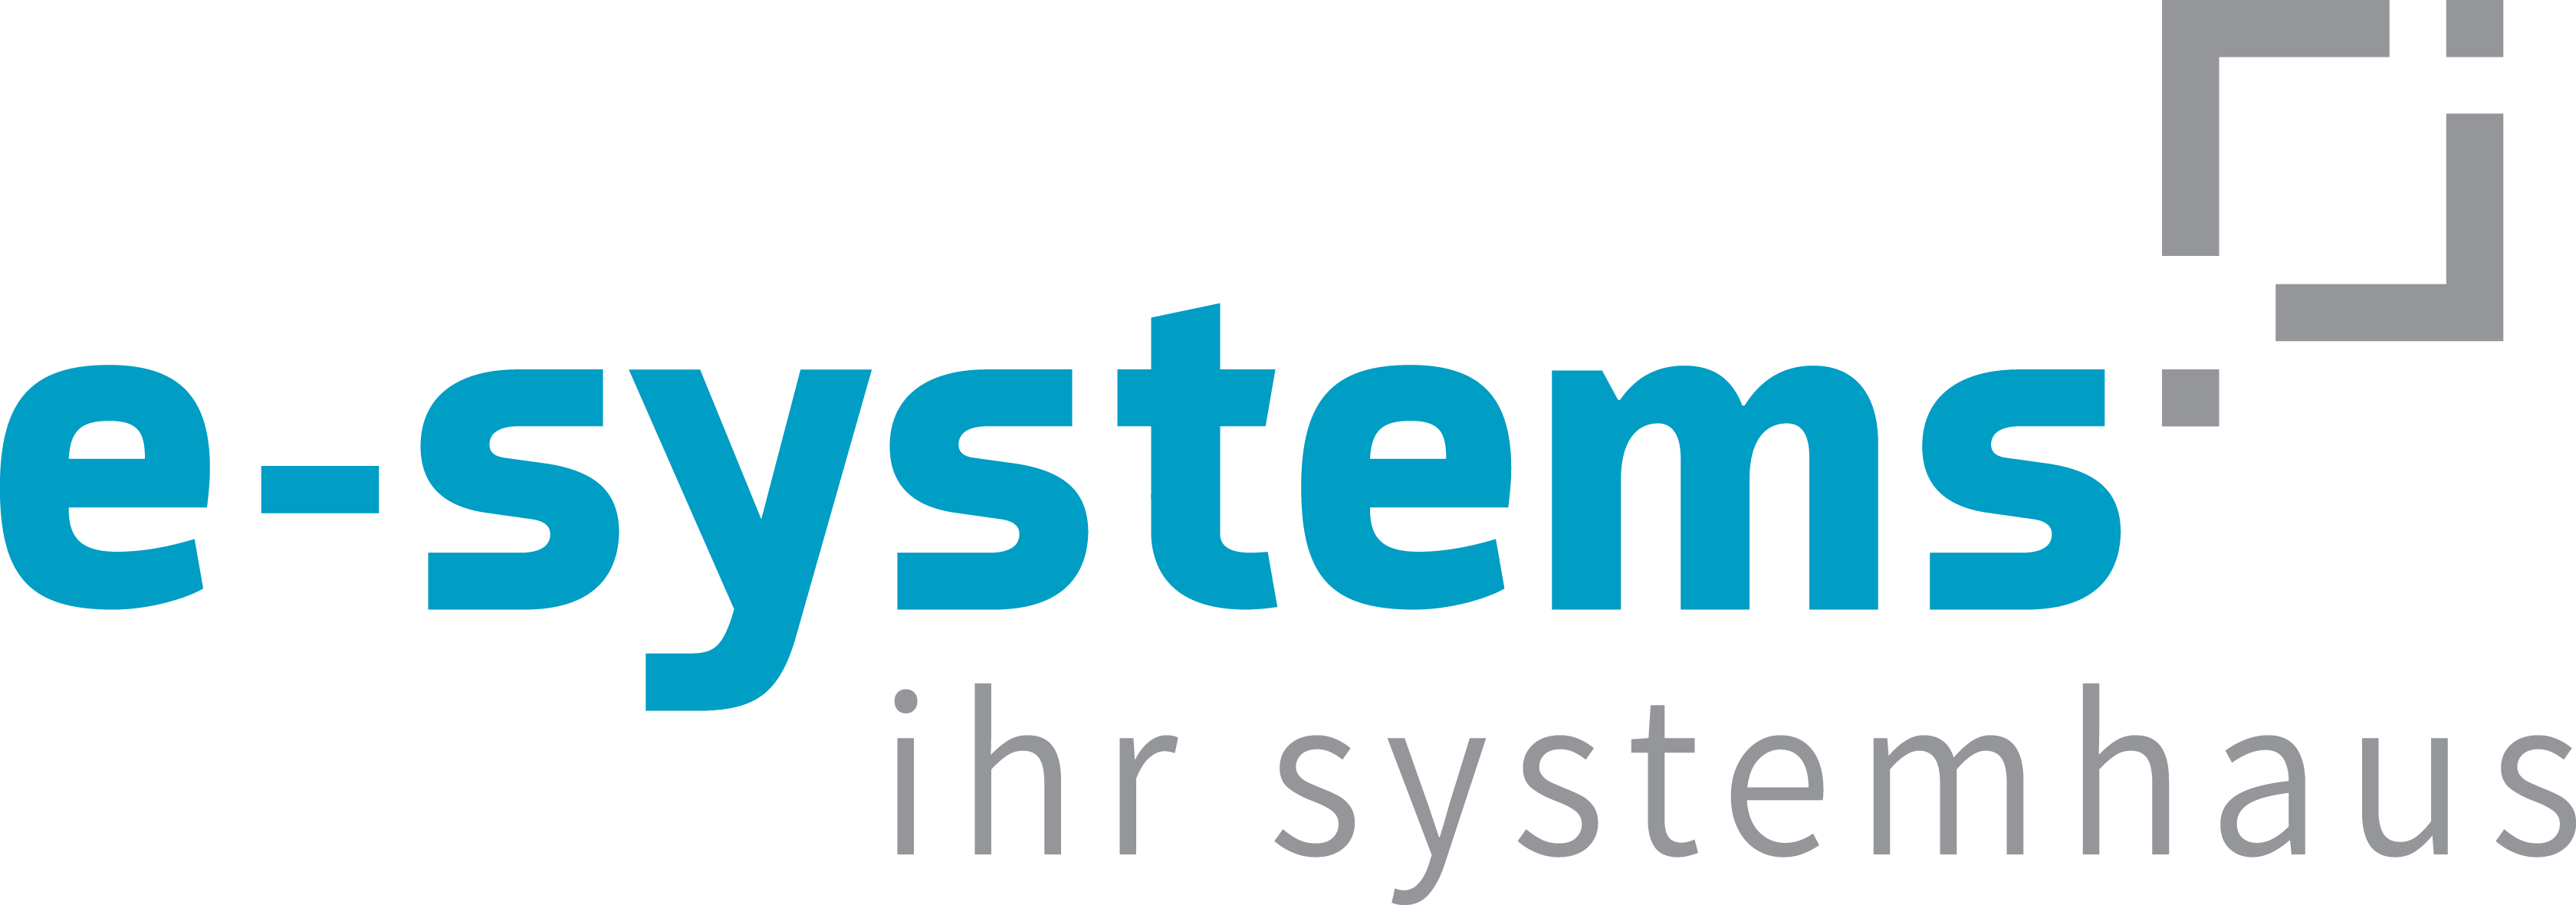 e systems logo transparent 1